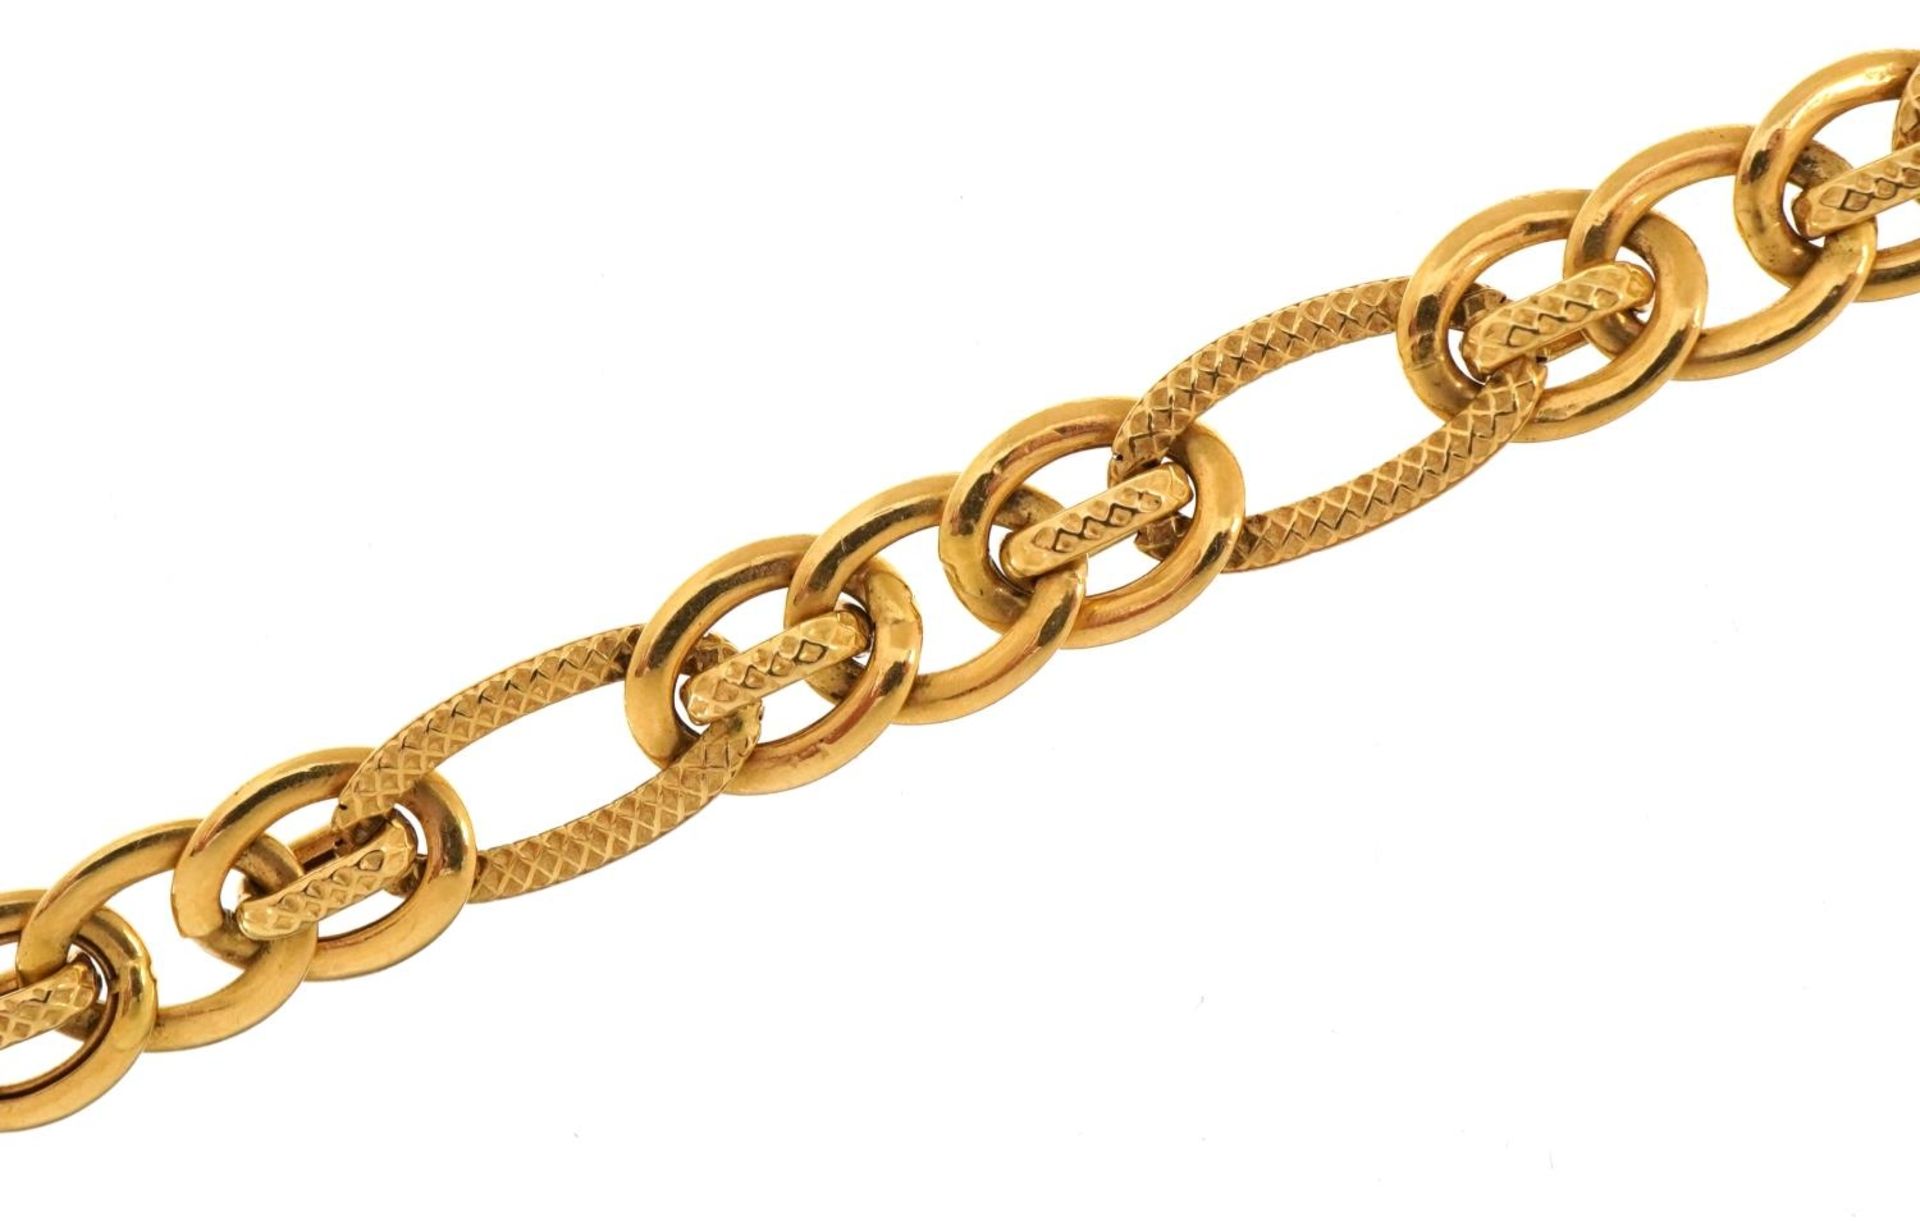 18ct gold multilink bracelet, 19.5cm in length, 6.2g